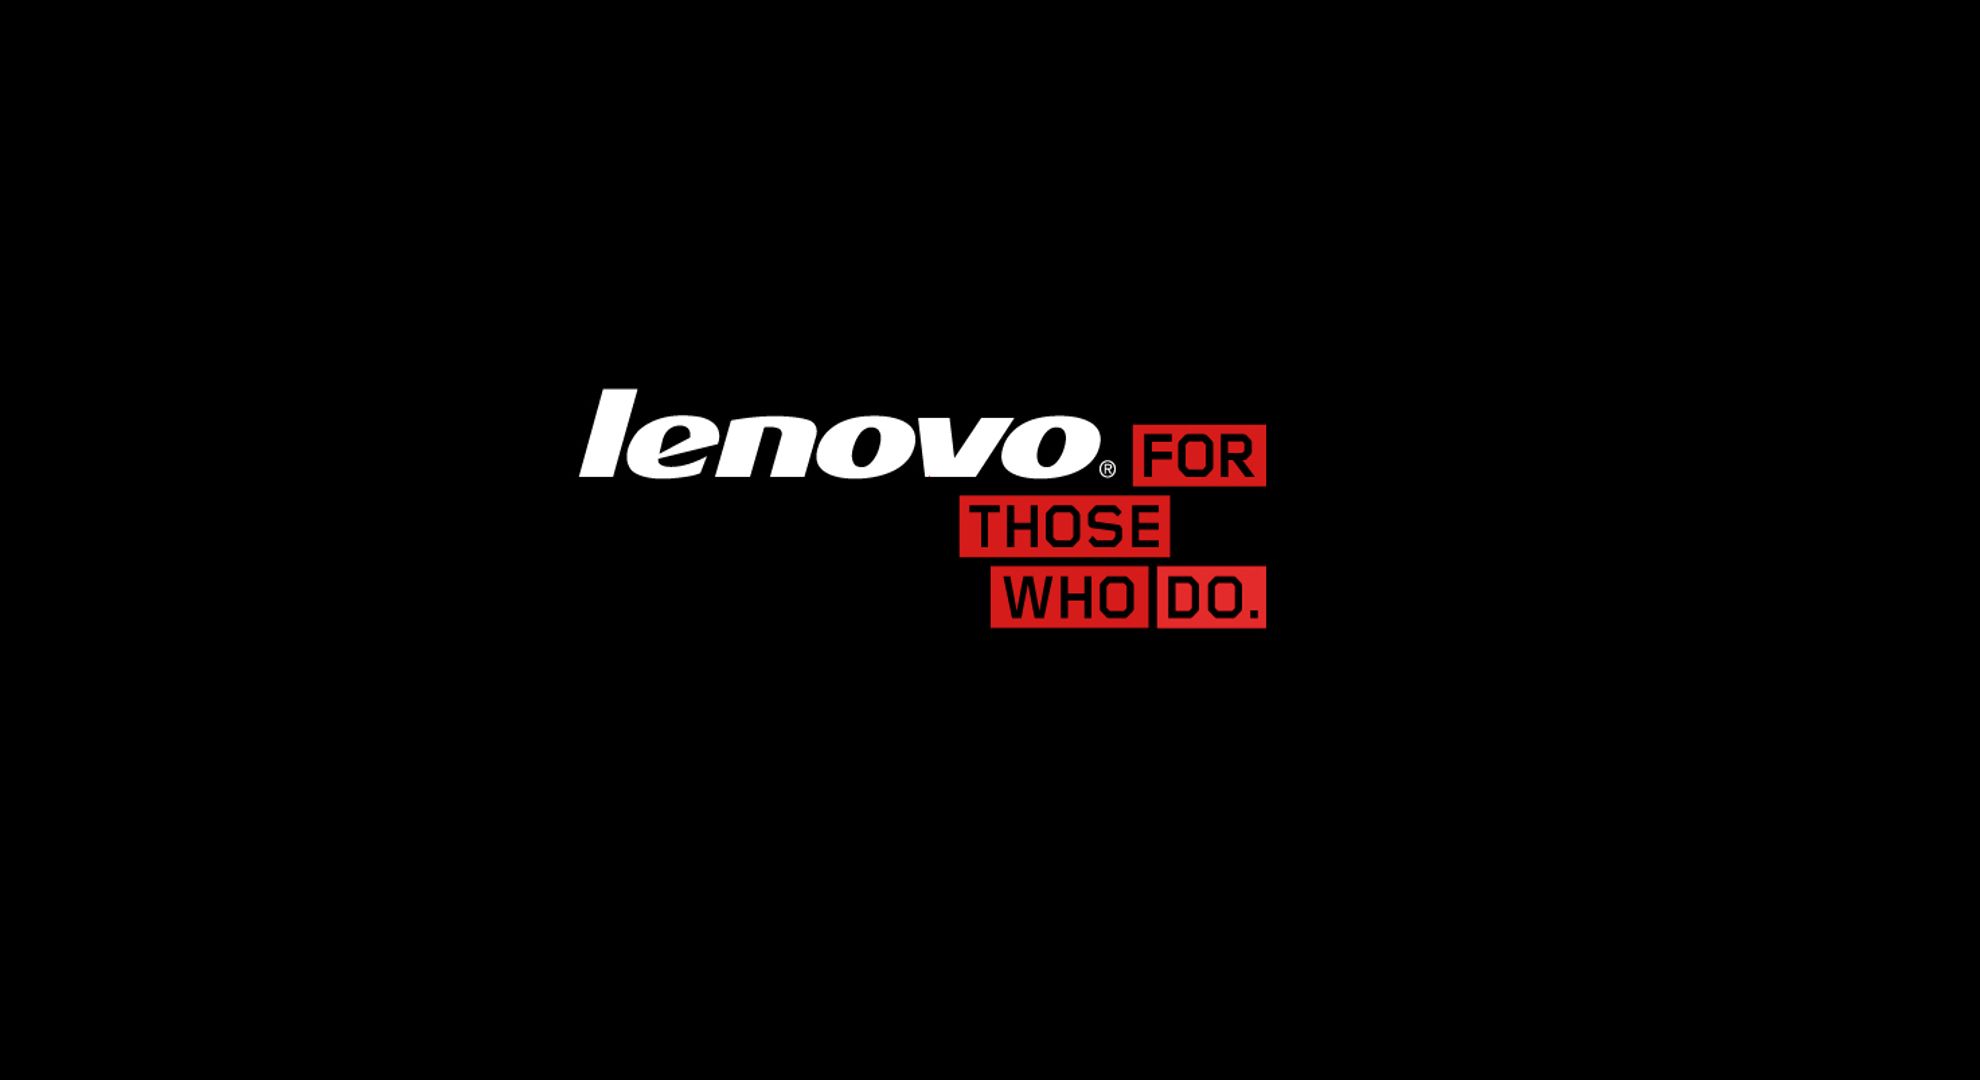 Laden Sie Lenovo HD-Desktop-Hintergründe herunter